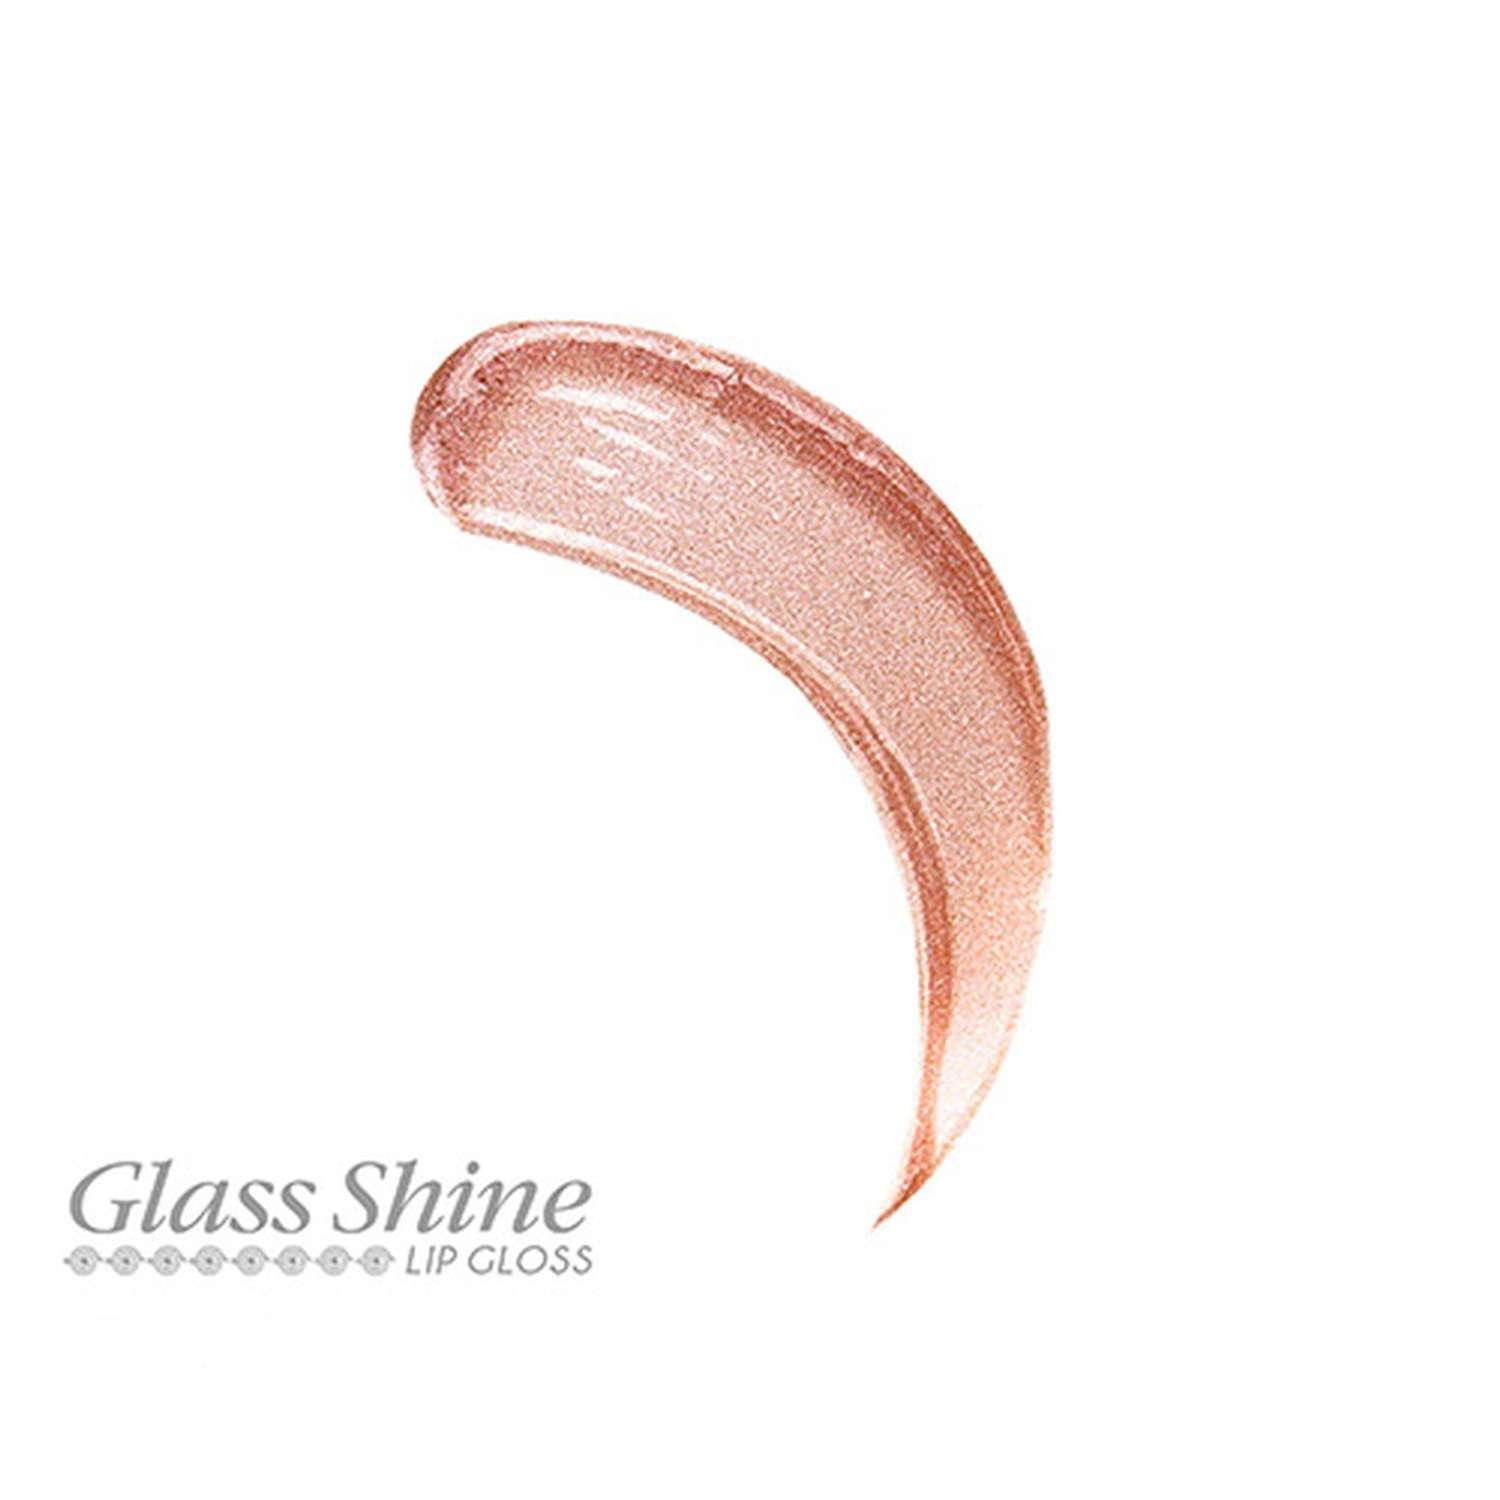 Блеск для губ Luxvisage Glass shine тон 19 - фото 5